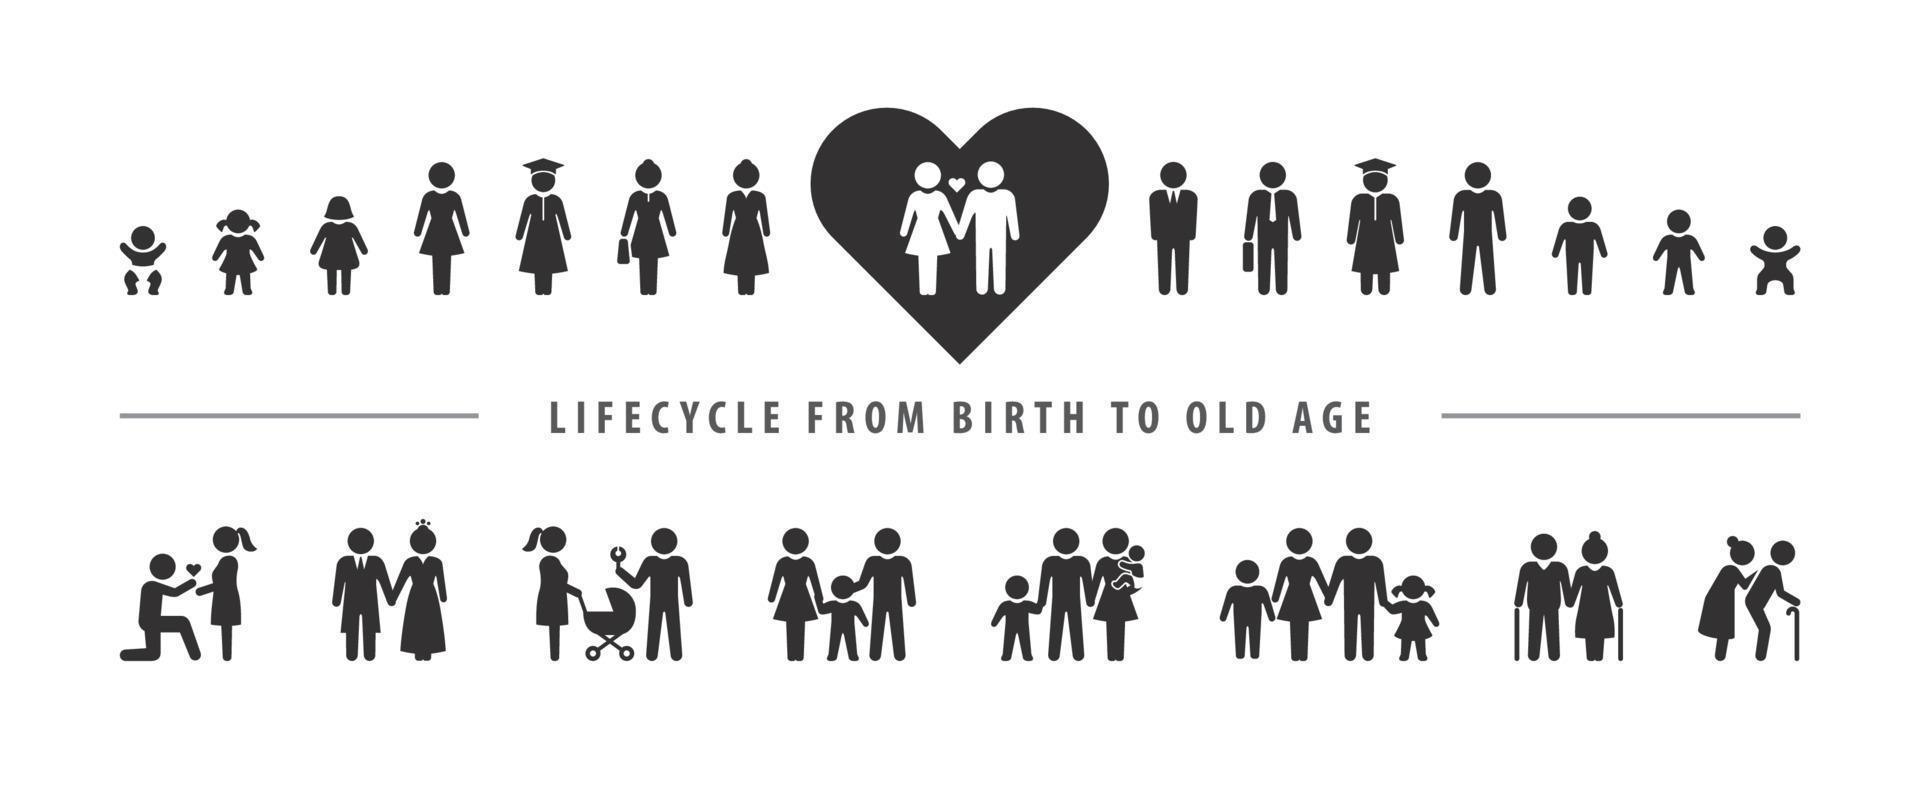 ciclo de vida e processo de envelhecimento. conjunto de ícones vetoriais, pessoa crescendo desde o bebê até a velhice. vetor